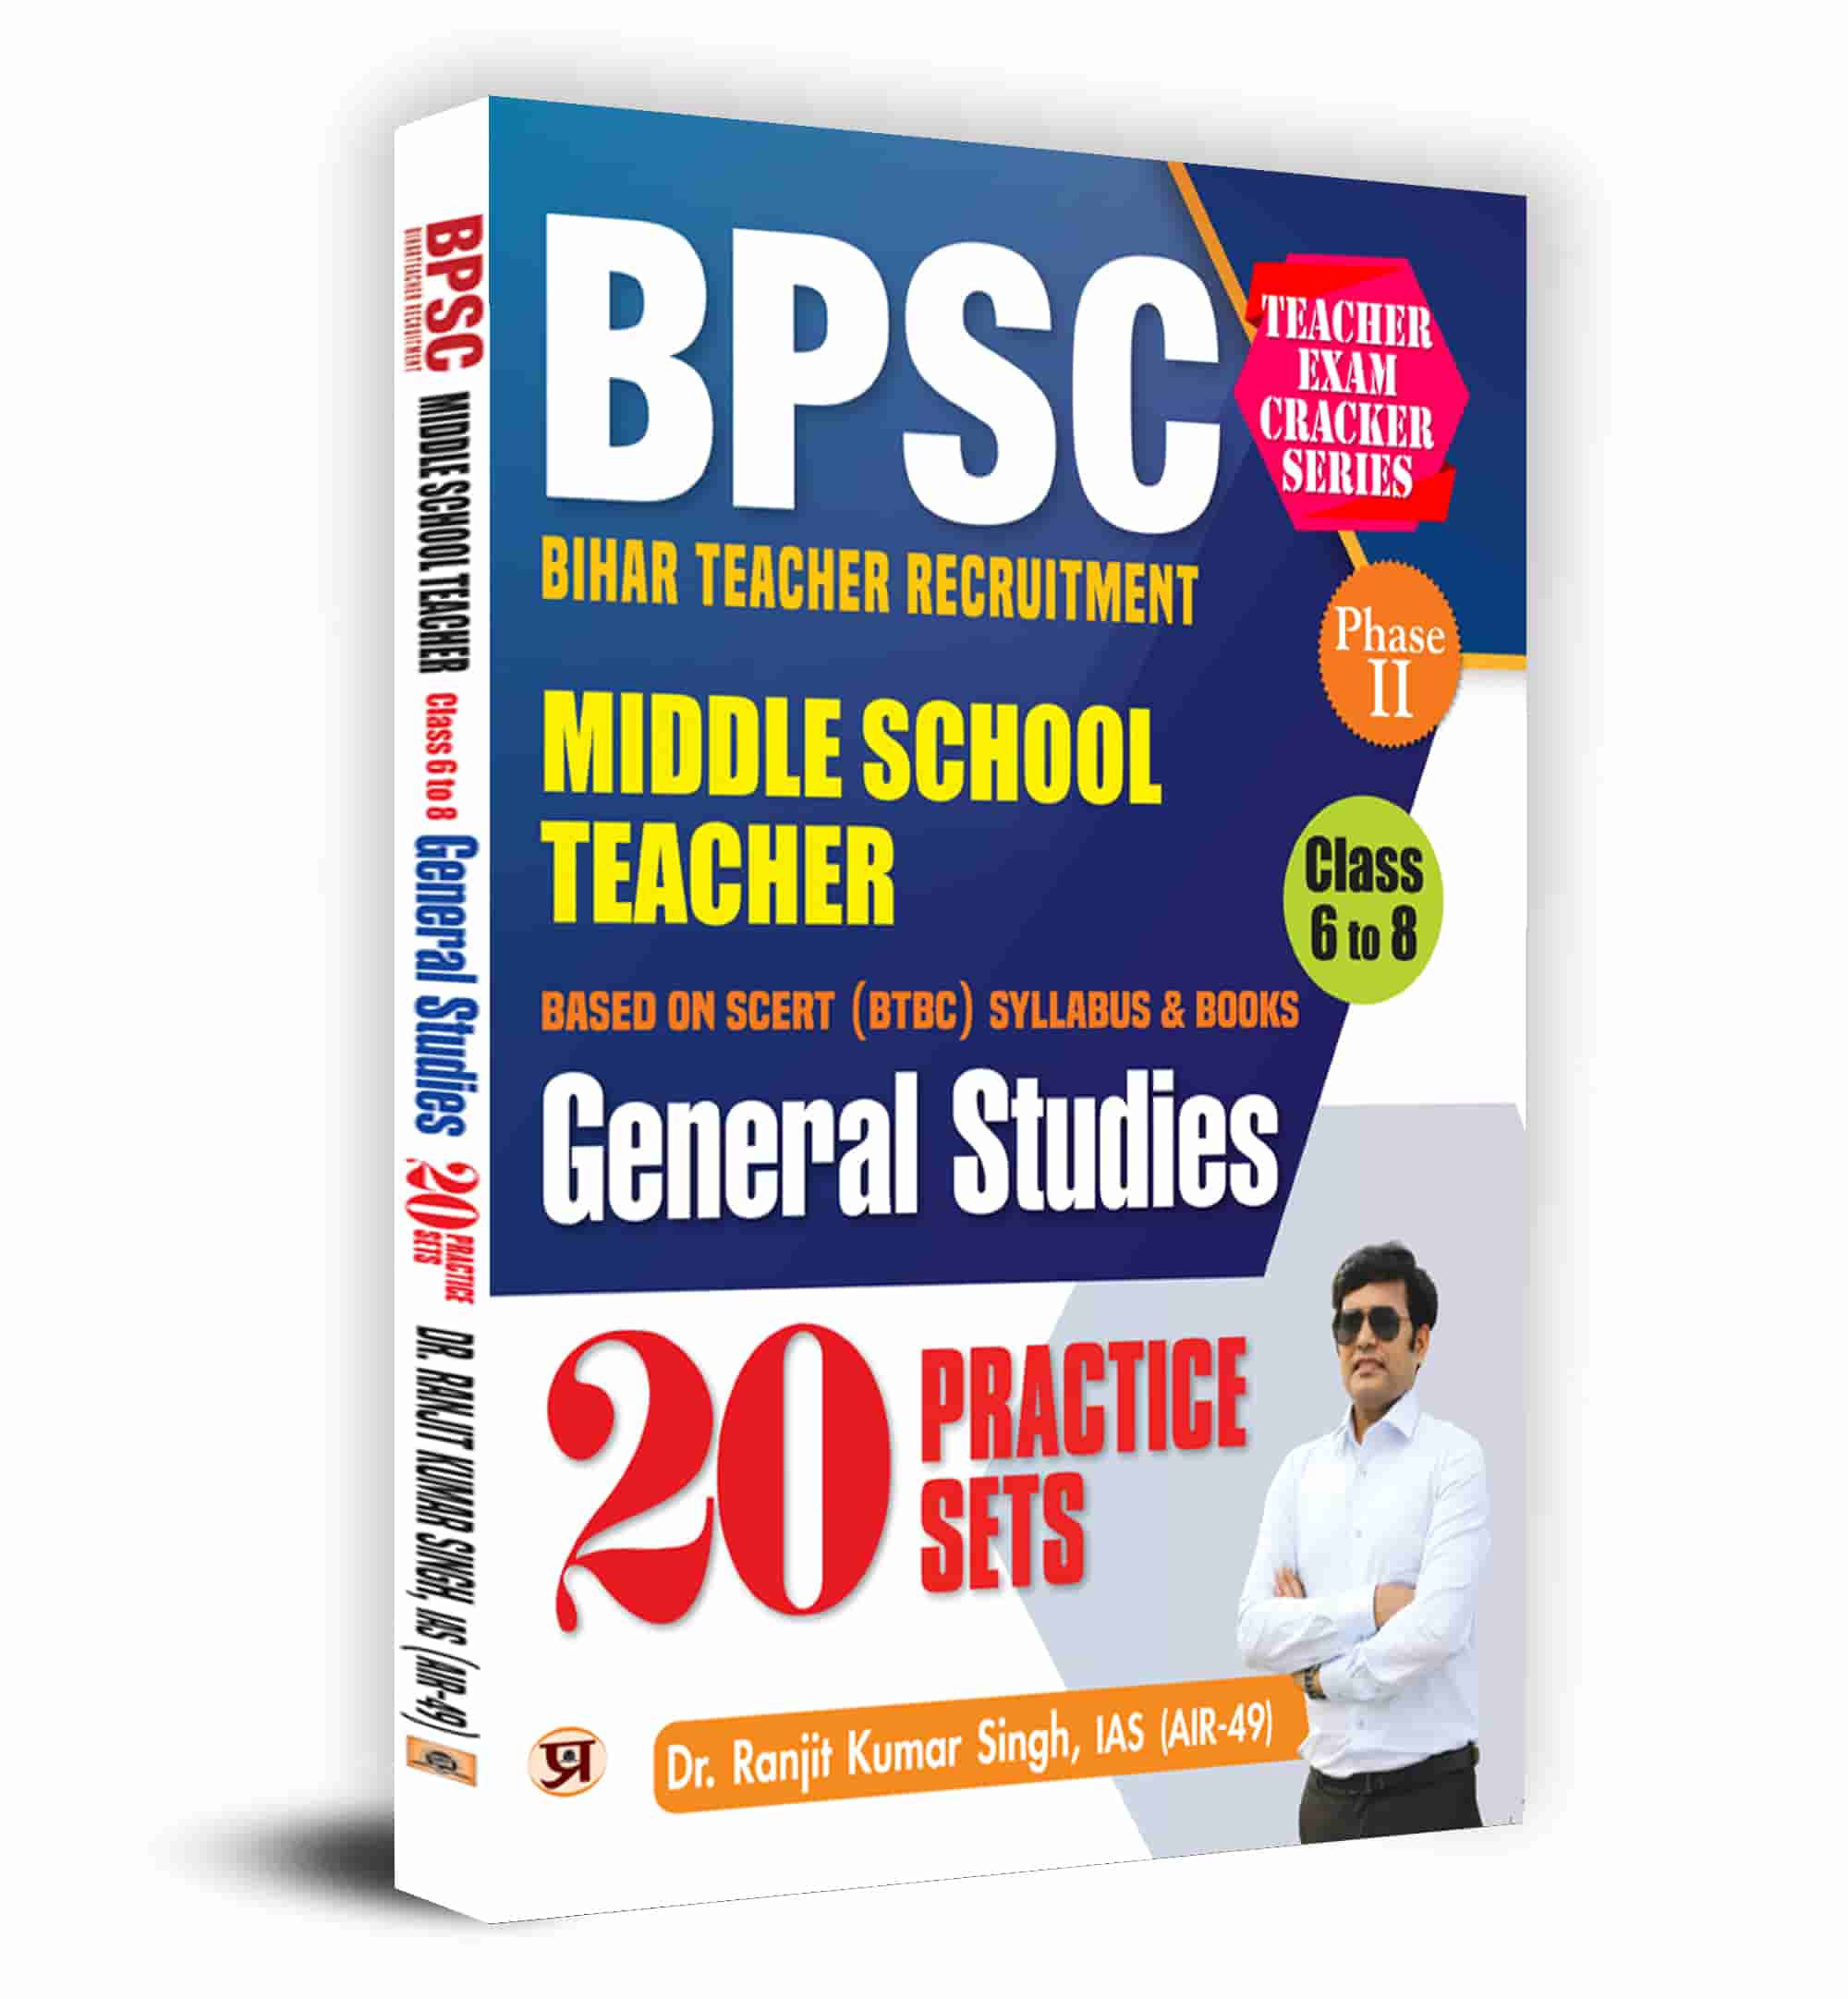 BPSC Bihar Teacher Recruitment for Middle School Teachers Phase II  C... 